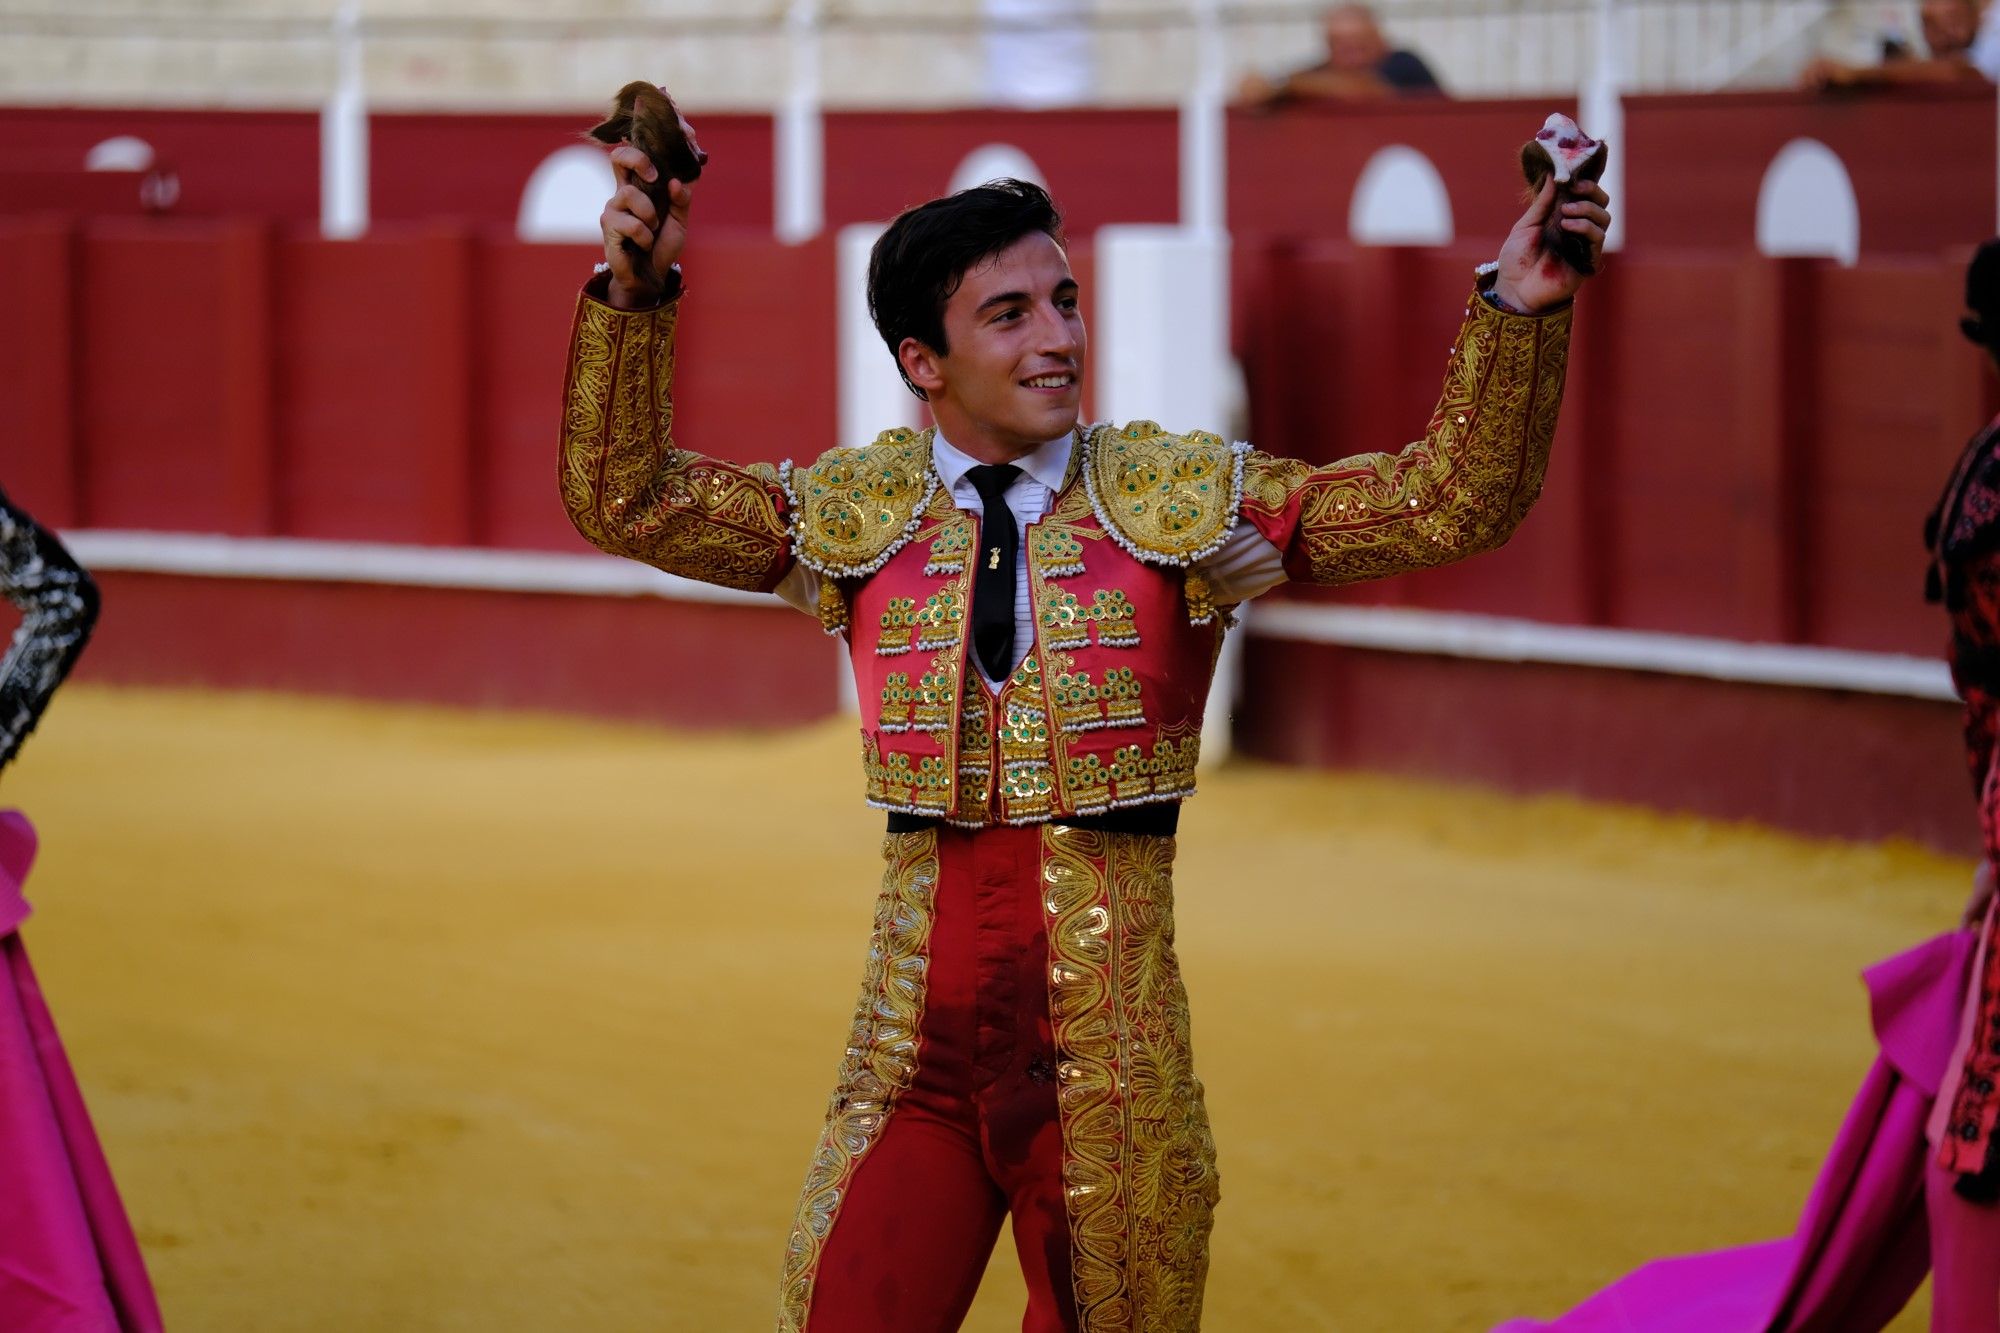 Toros en la Feria | Novena corrida de abono en La Malagueta: 3ª Semifinal de las Escuelas Taurinas